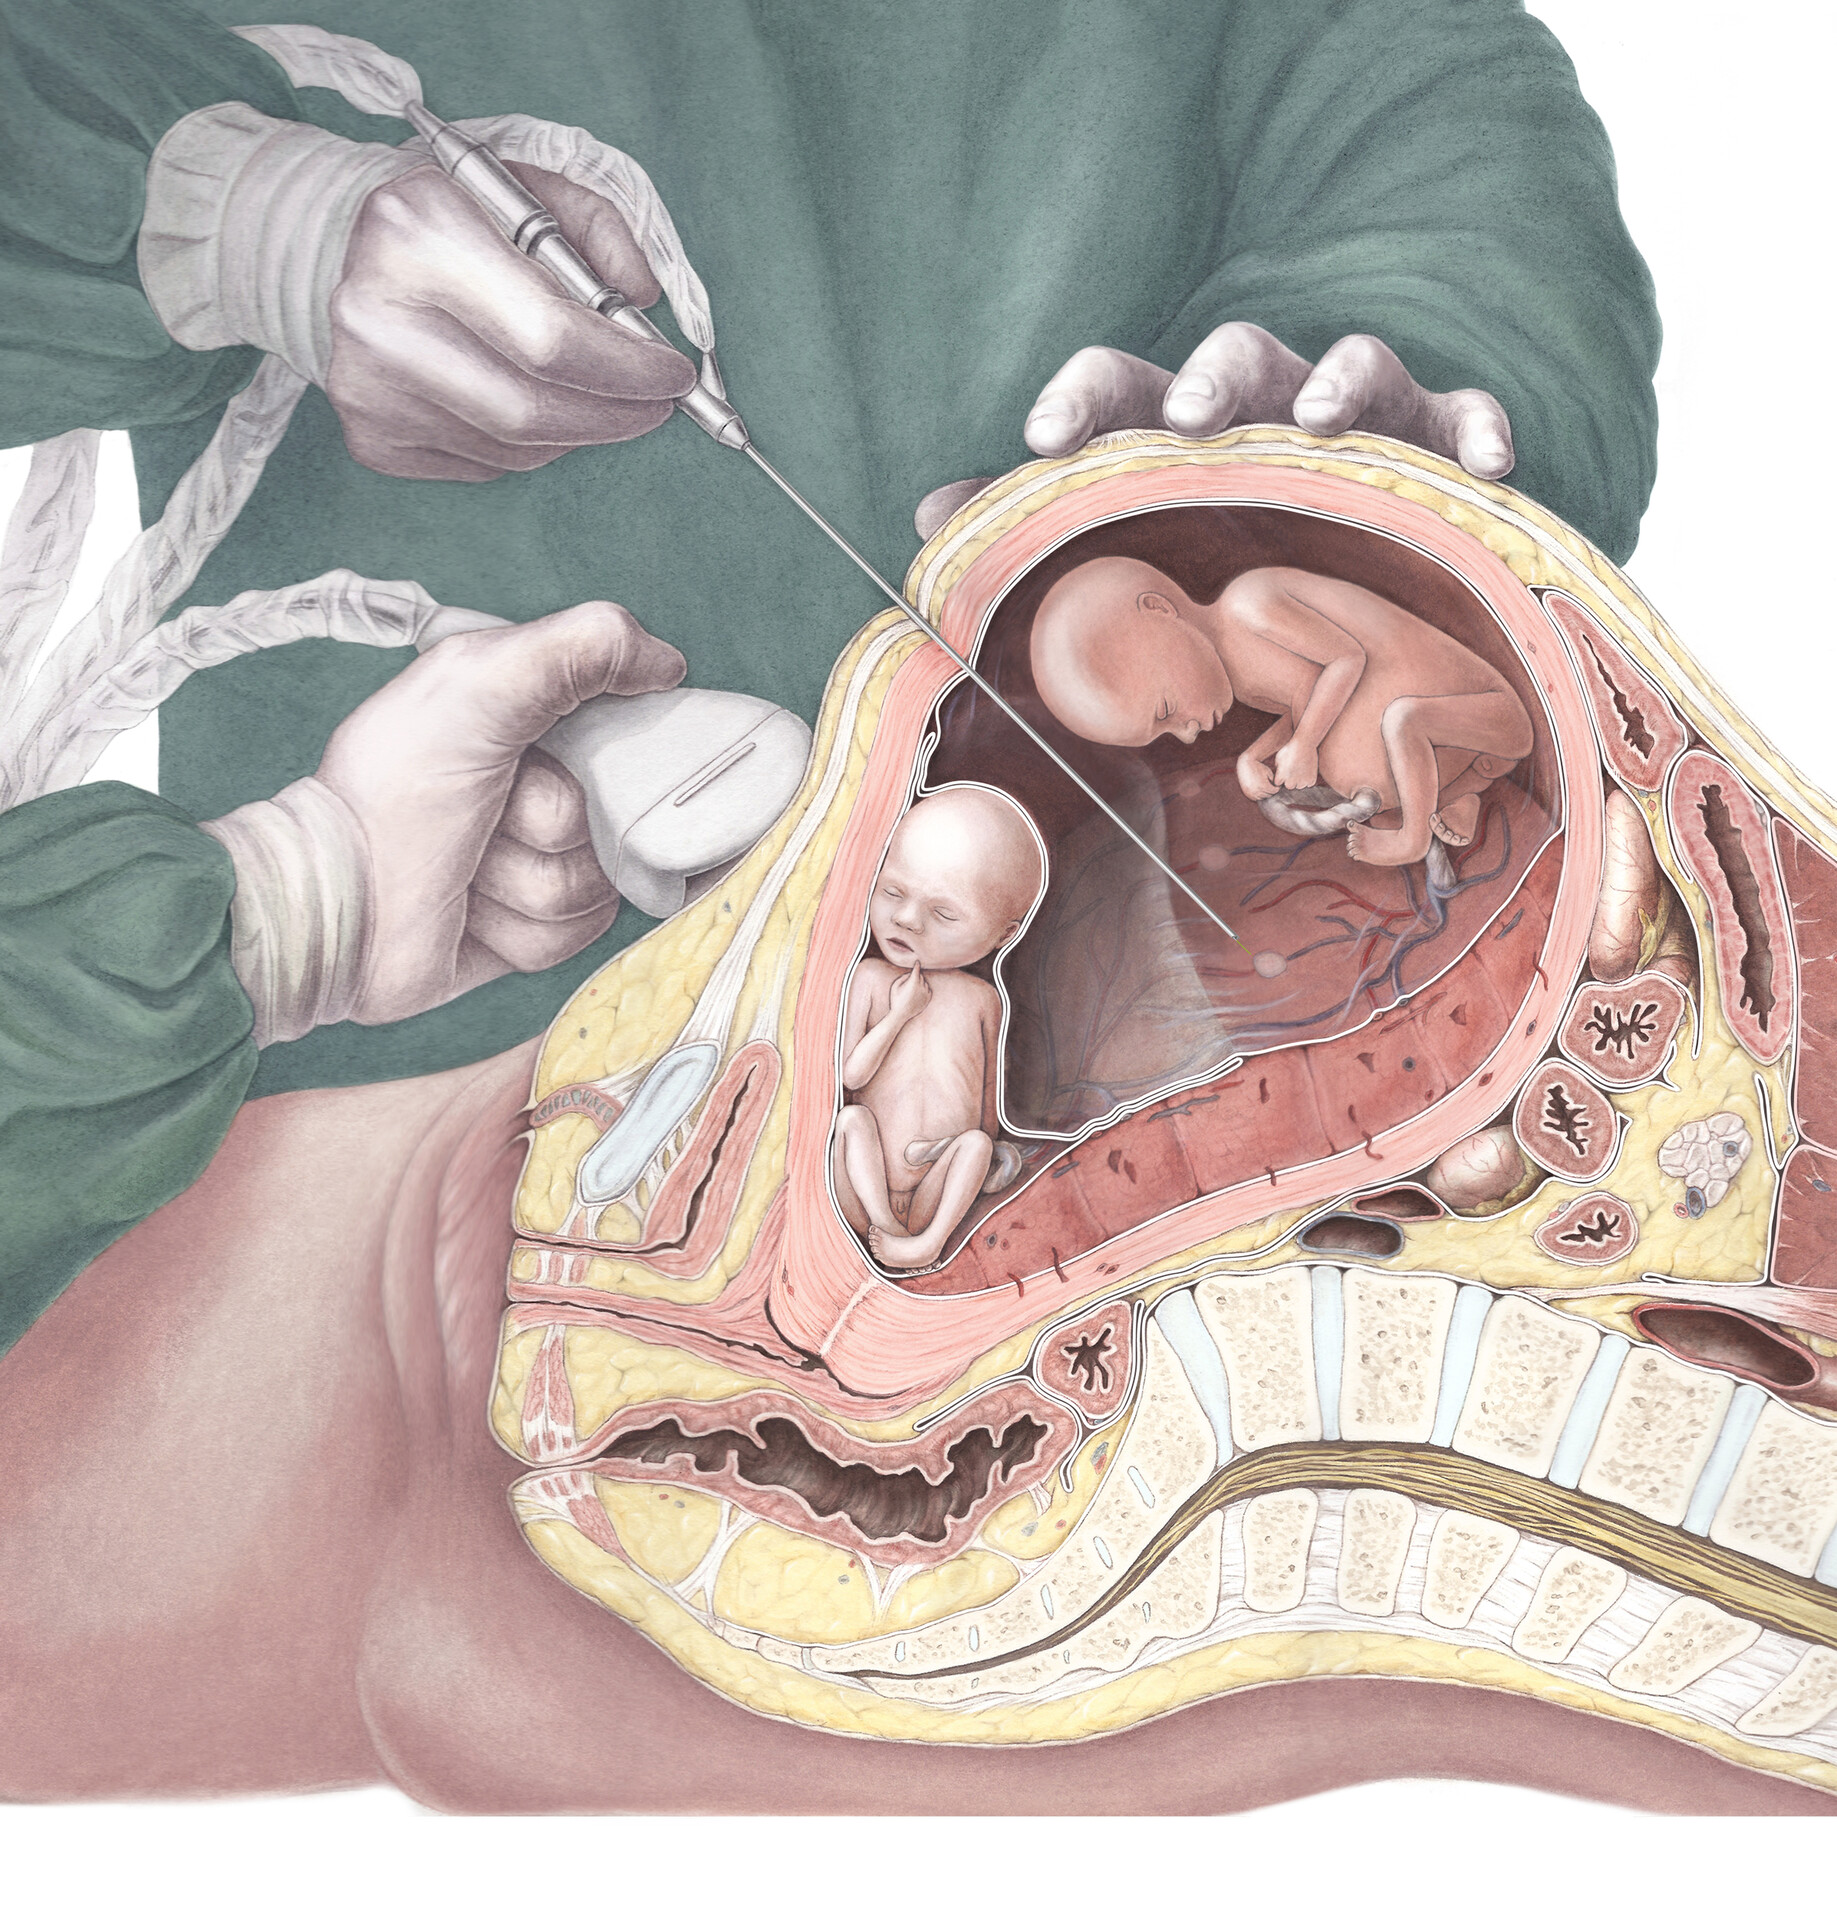 triplets fetus in womb